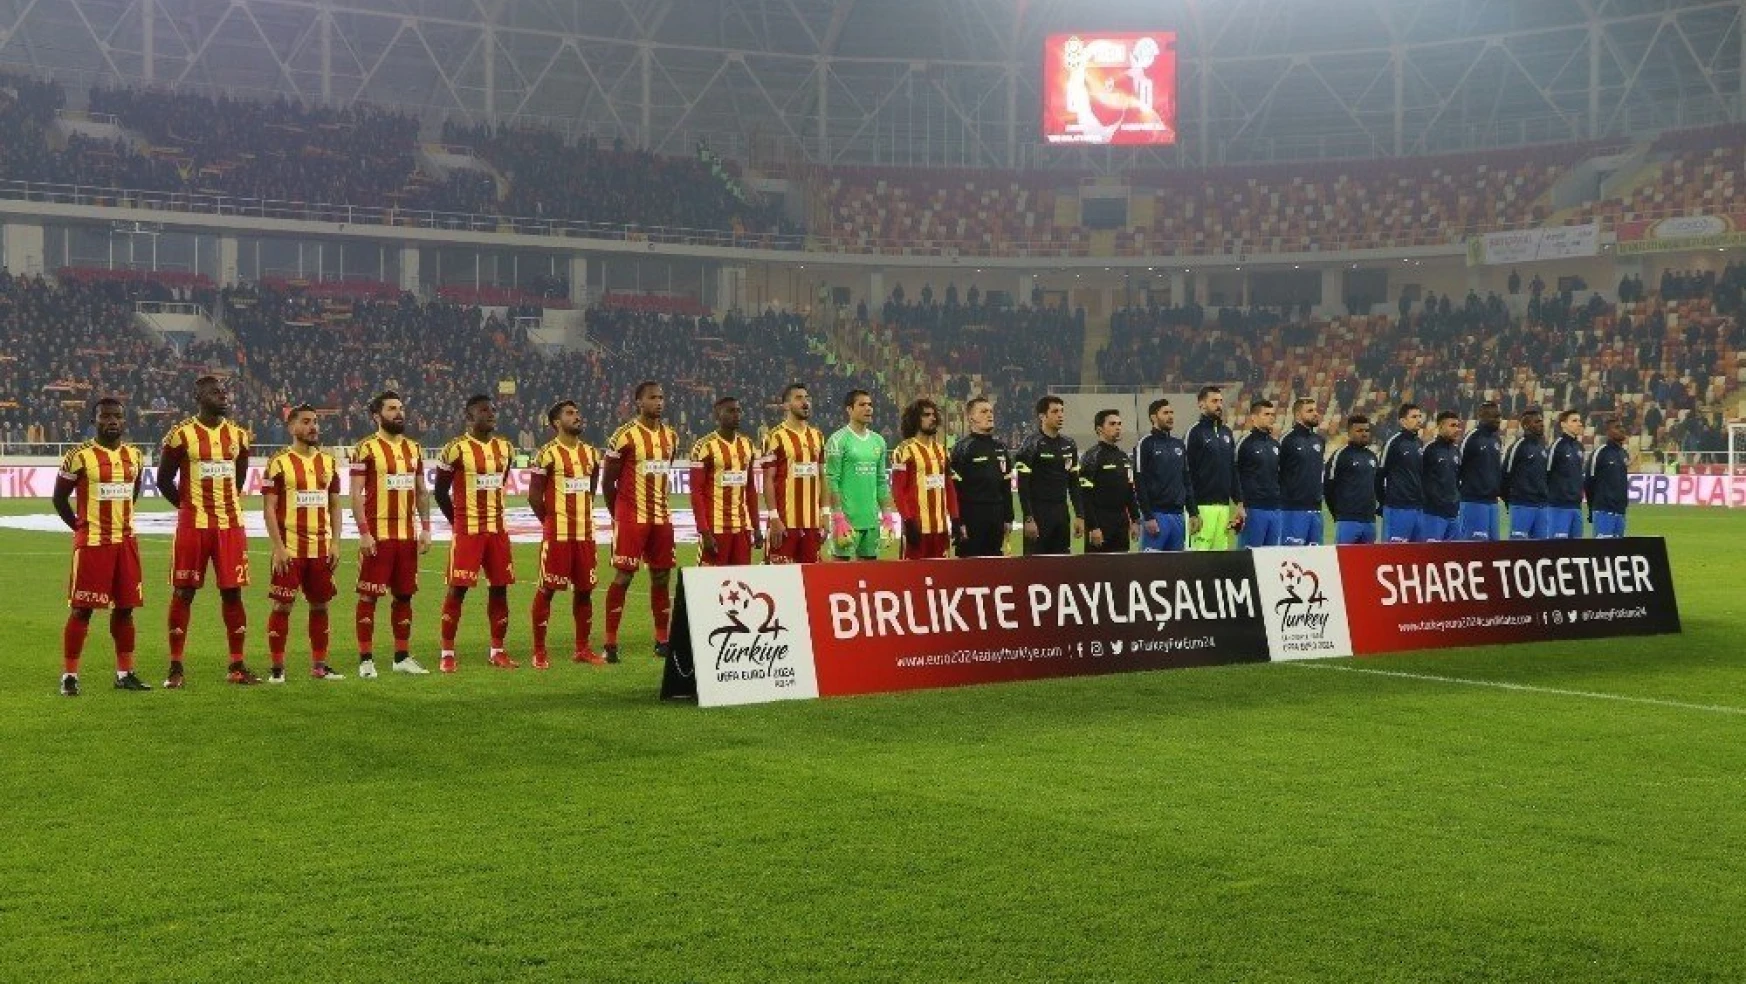 Spor Toto Süper Lig: Evkur Yeni Malatyaspor: 1 - Kasımpaşa: 1 (İlk yarı)
